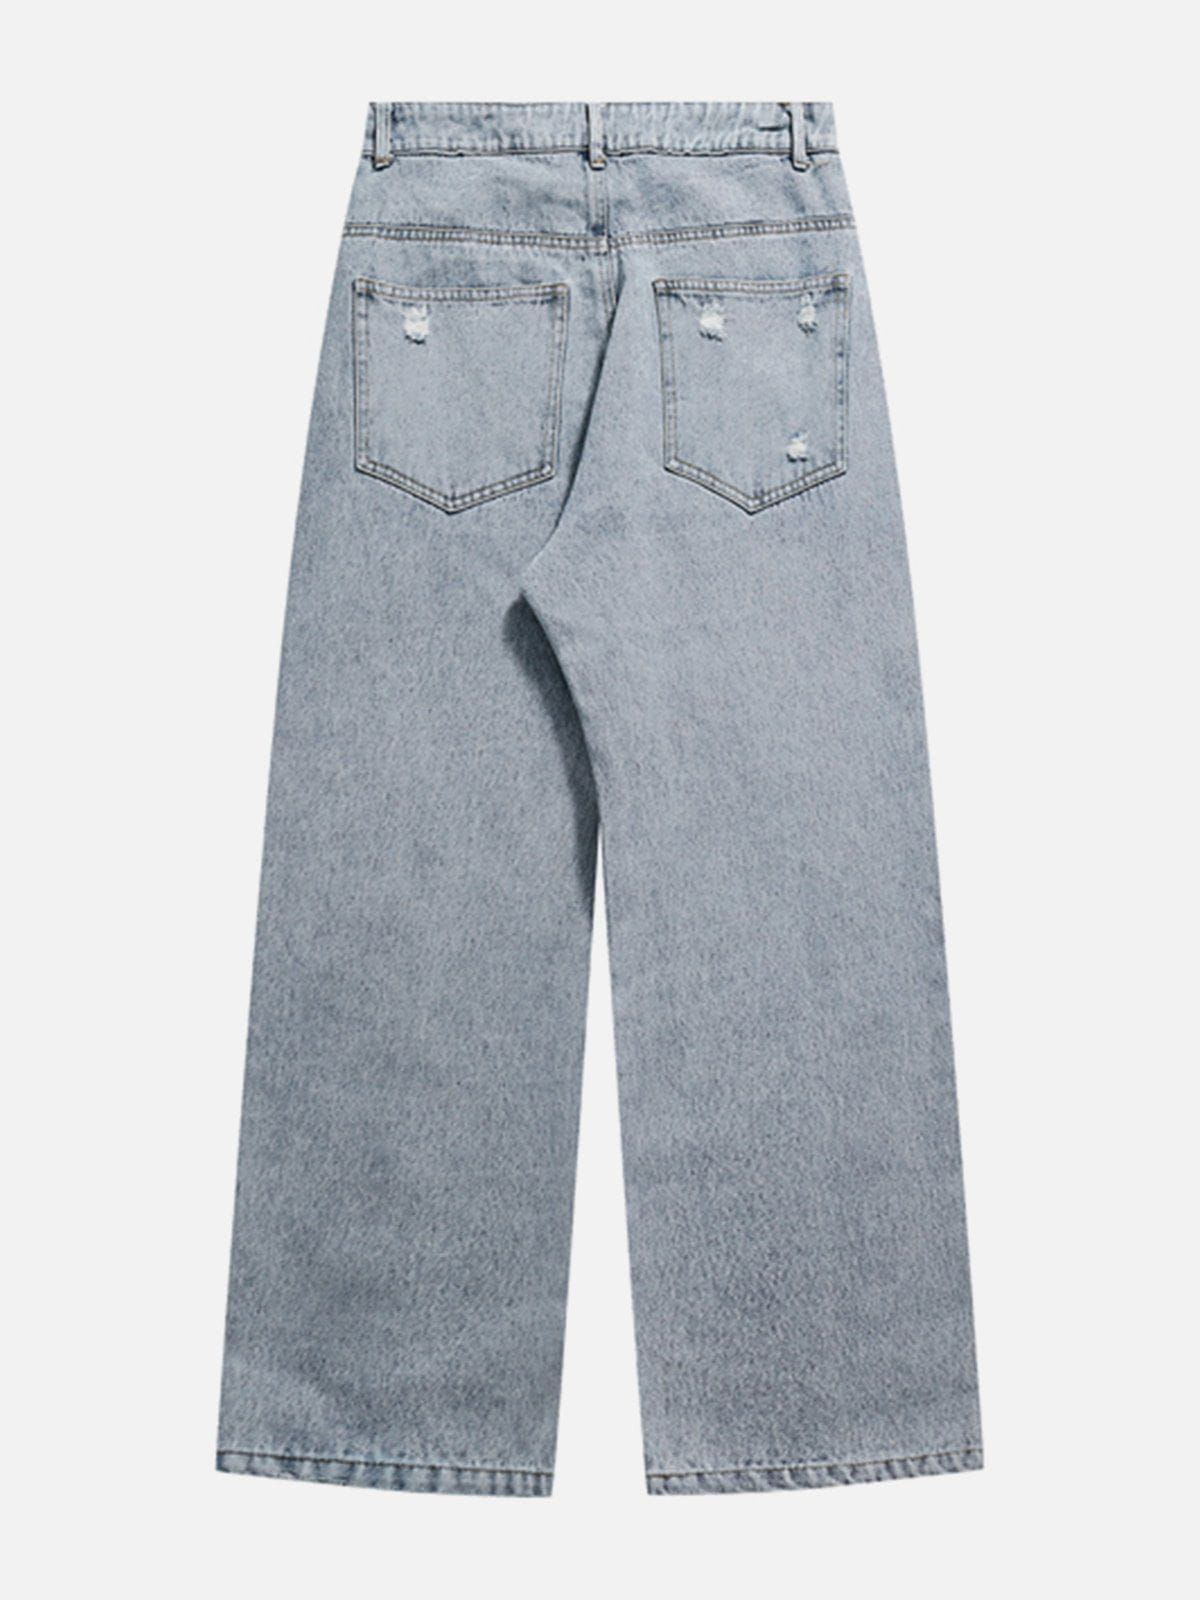 Eprezzy® - Shredded Raw Jeans Streetwear Fashion - eprezzy.com